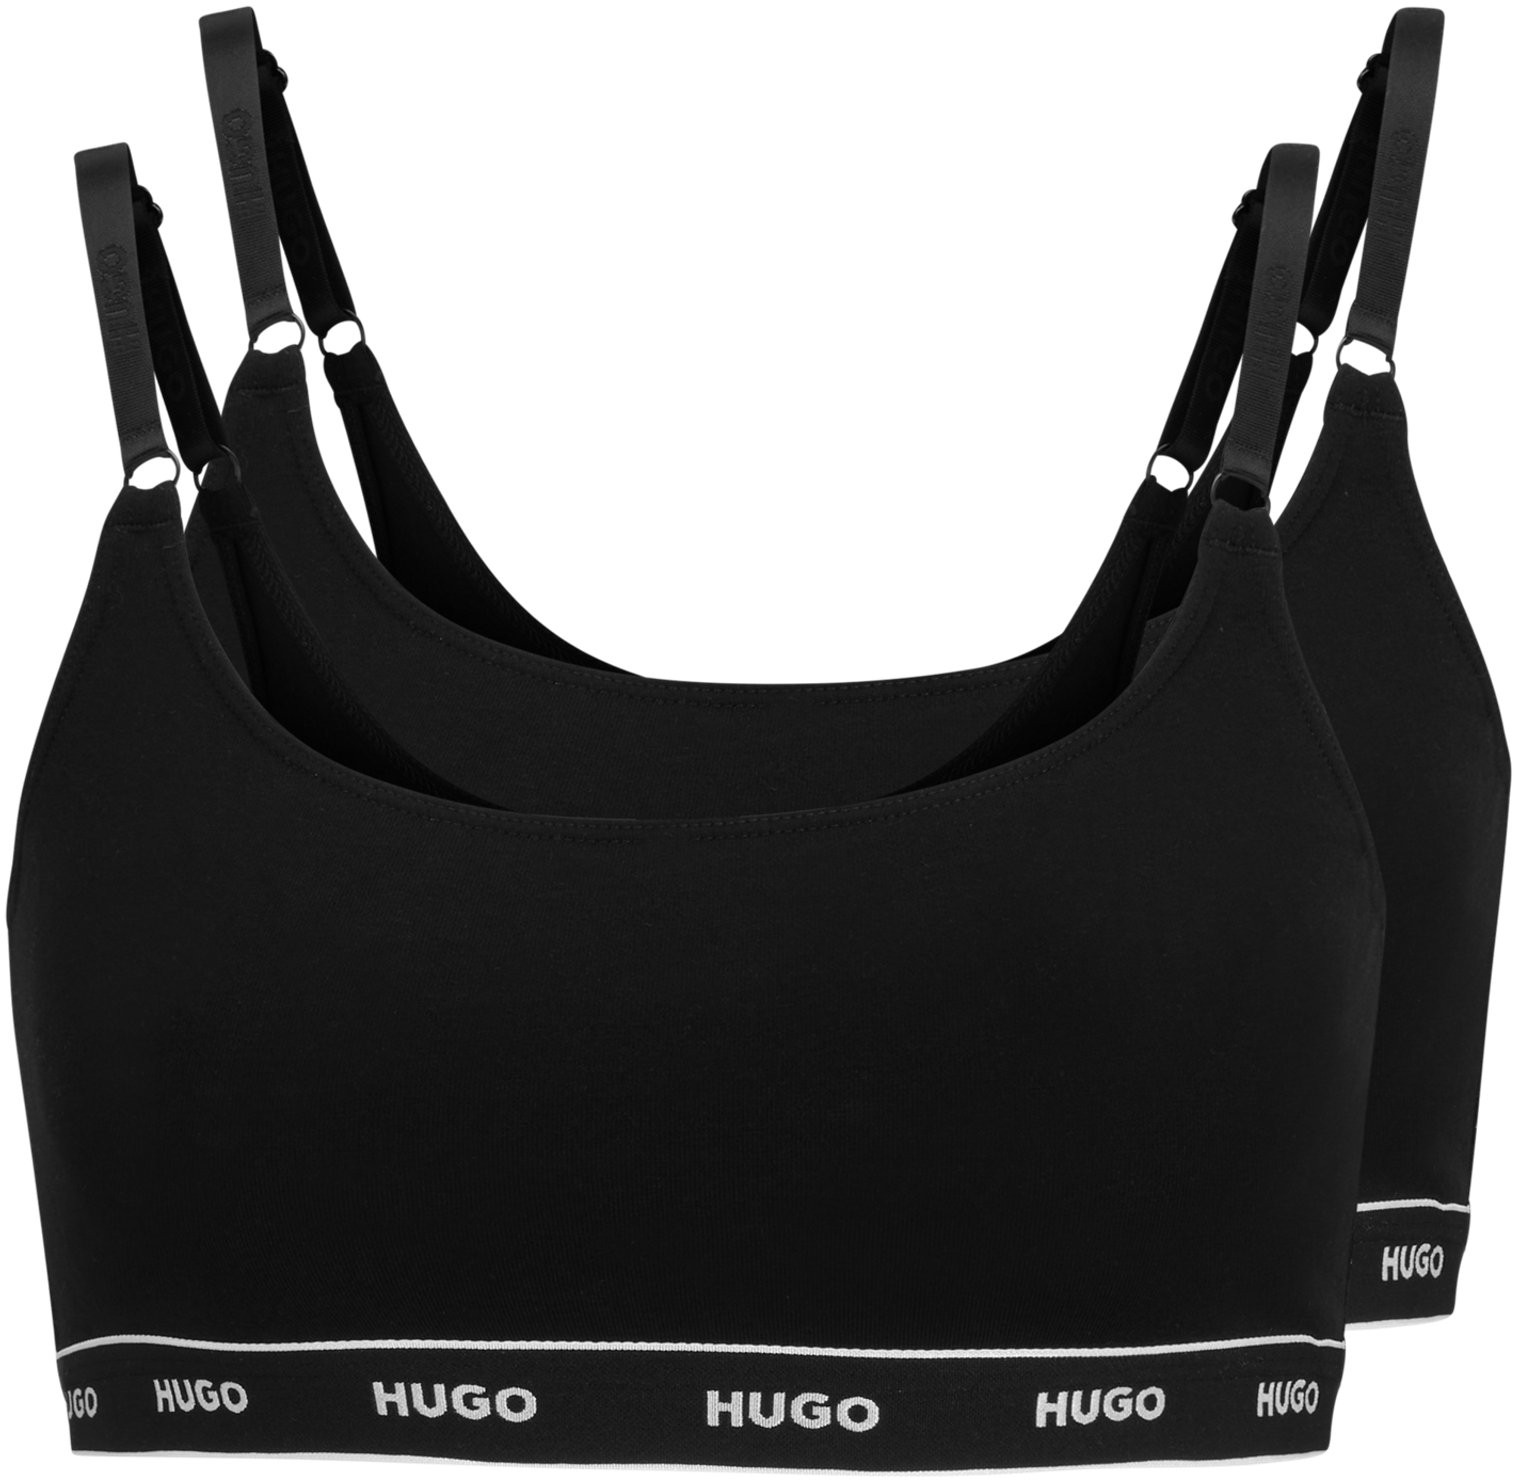 Hugo Boss 2 PACK - dámska podprsenka HUGO Bralette 50469659-001 L